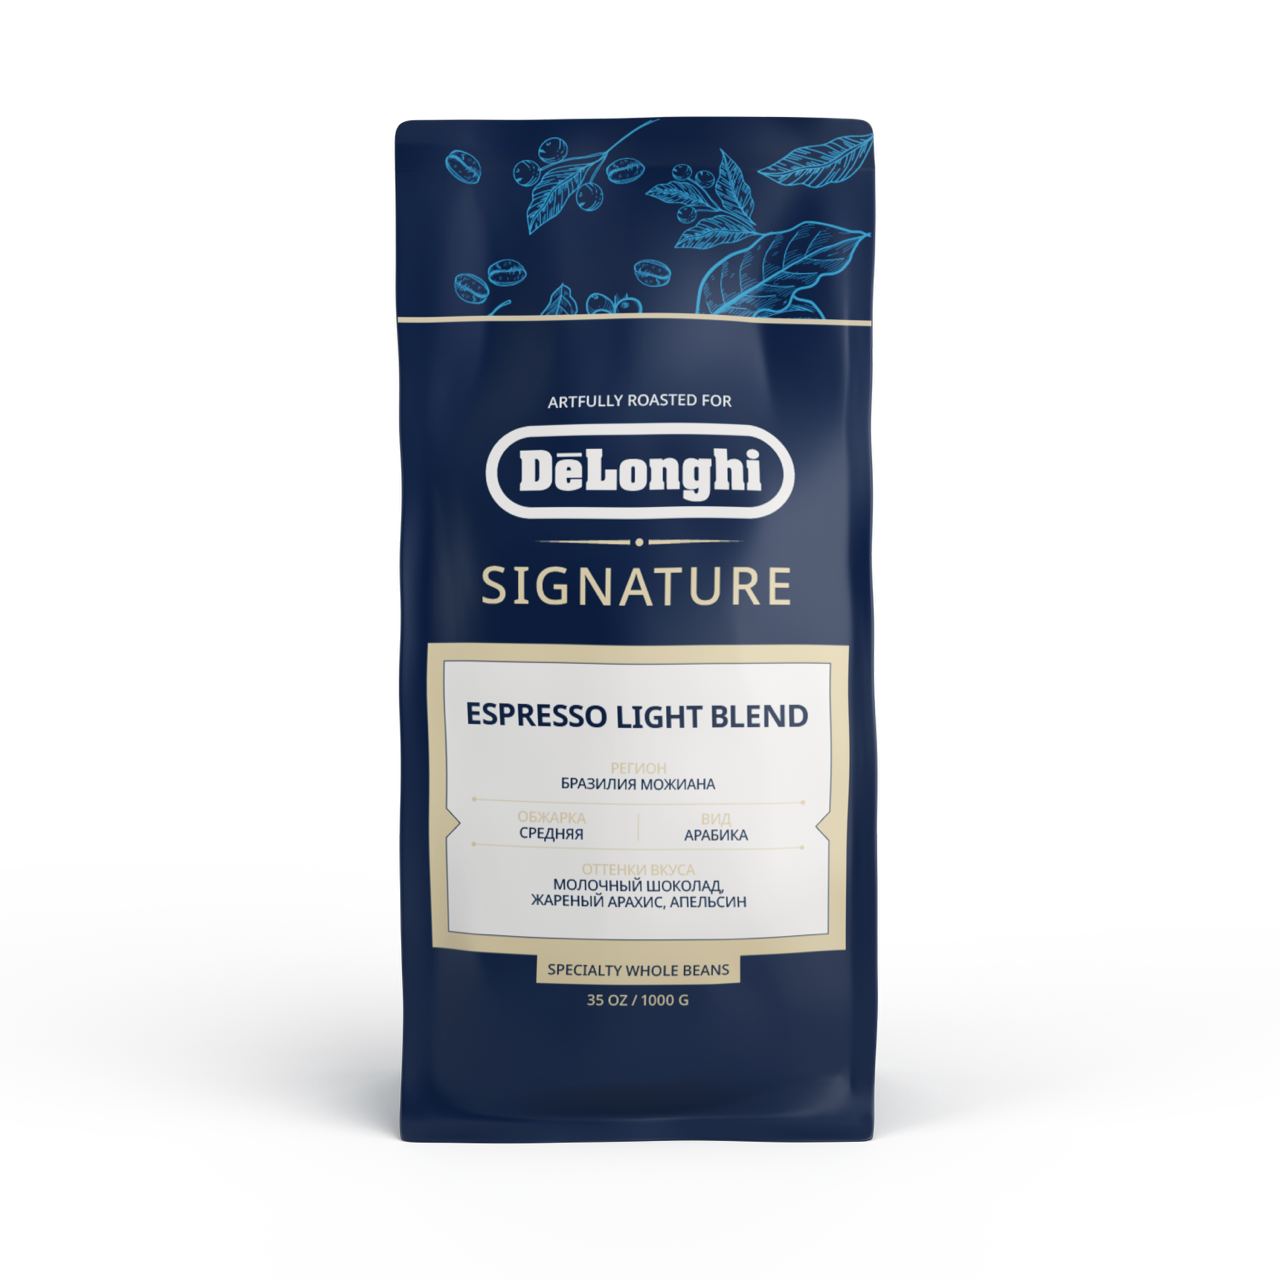 Купить кофе в зернах DeLonghi Signature Espresso Light, 1 кг, цены на Мегамаркет | Артикул: 600010403578